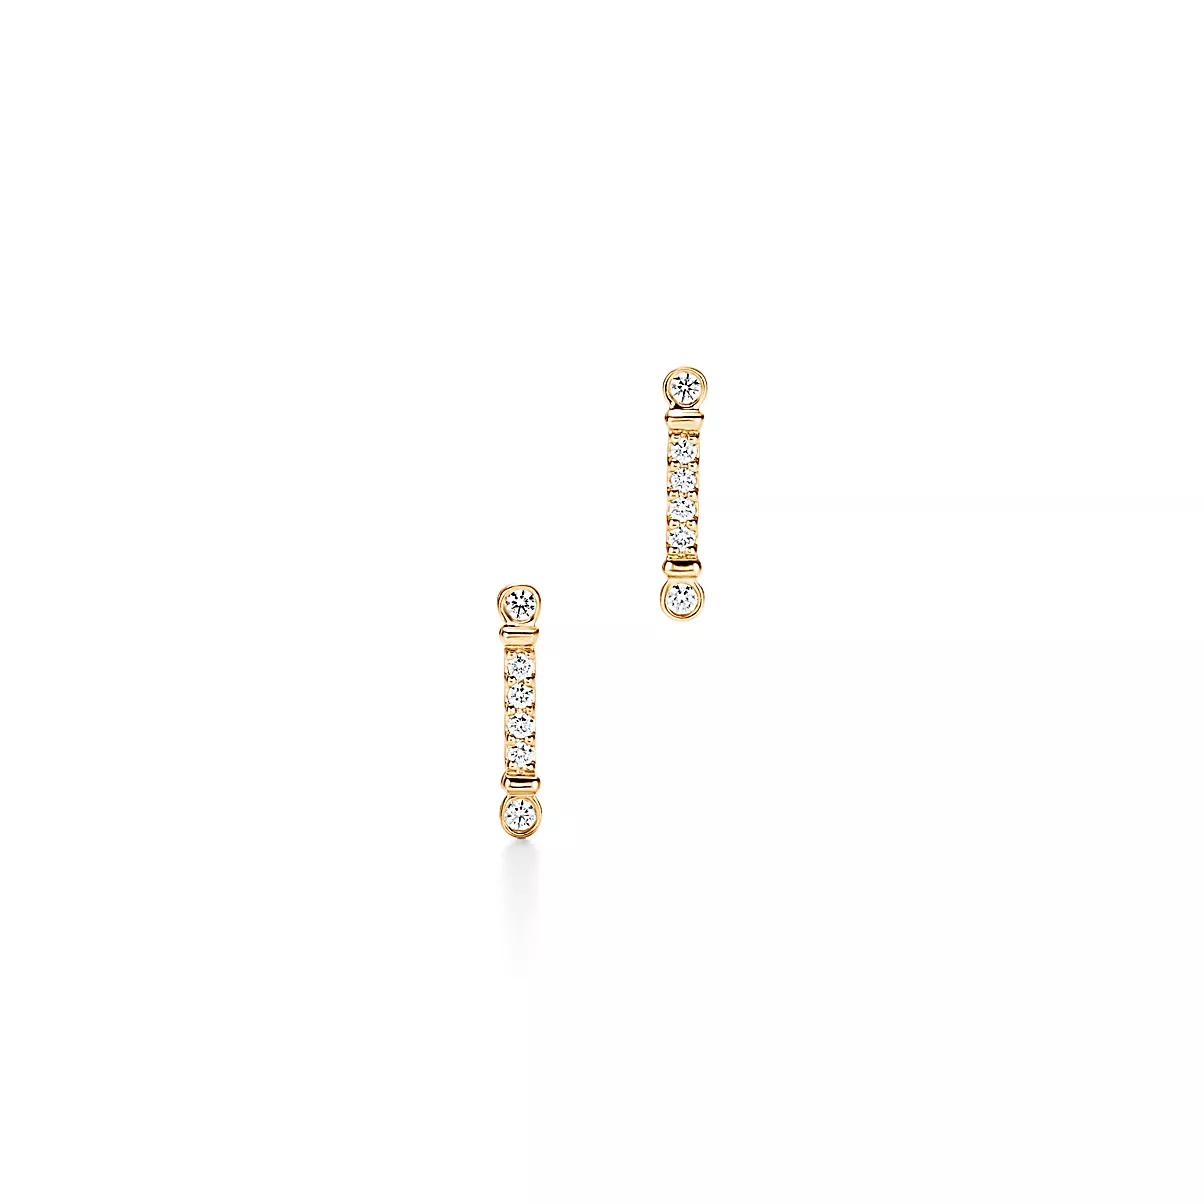 Tiffany Keys Earrings 18K 옐로우 골드 다이아몬드 One Scale